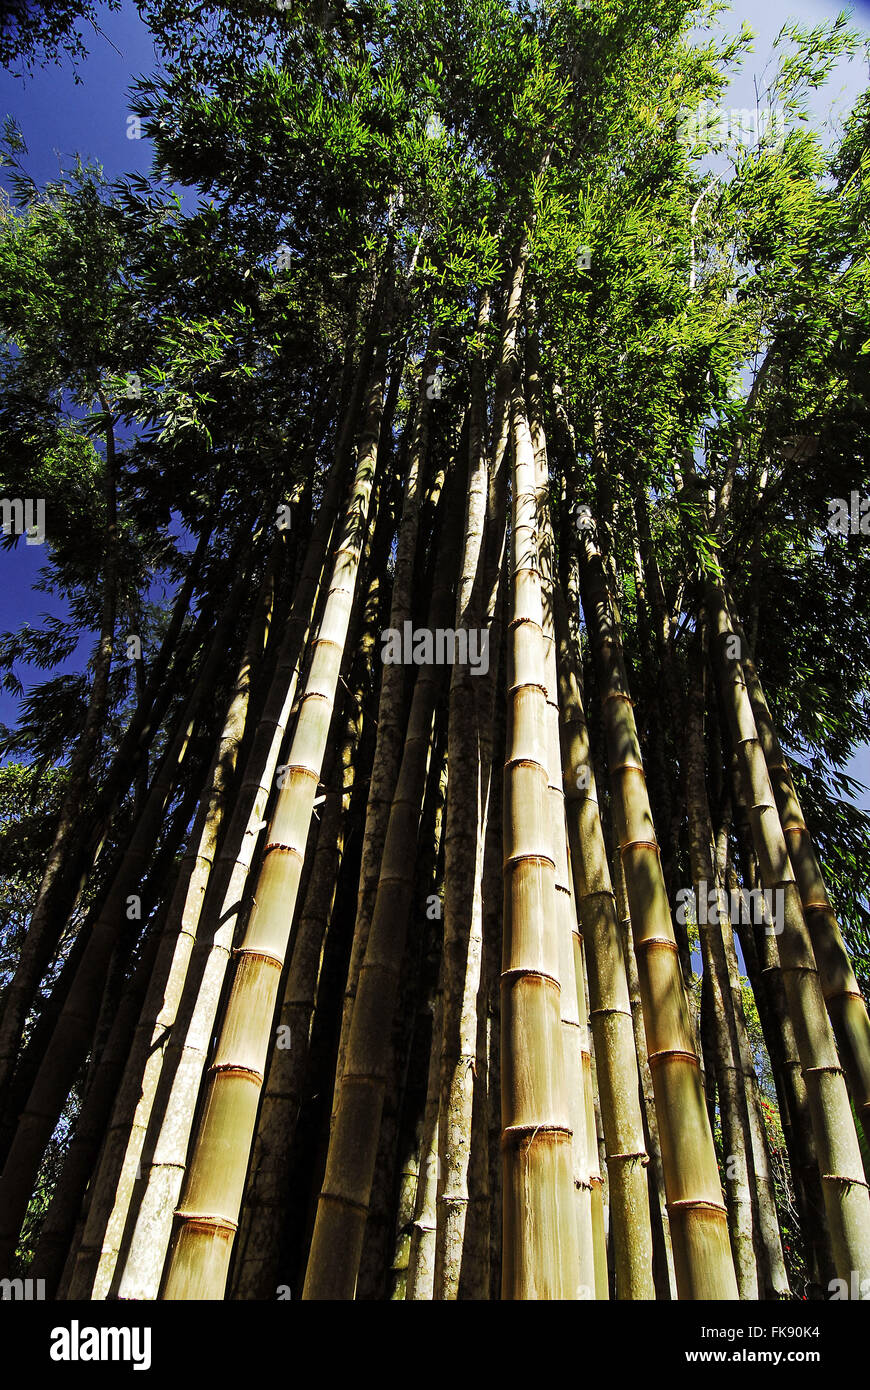 Giant bamboo - Dendrocalamus giganteus Stock Photo